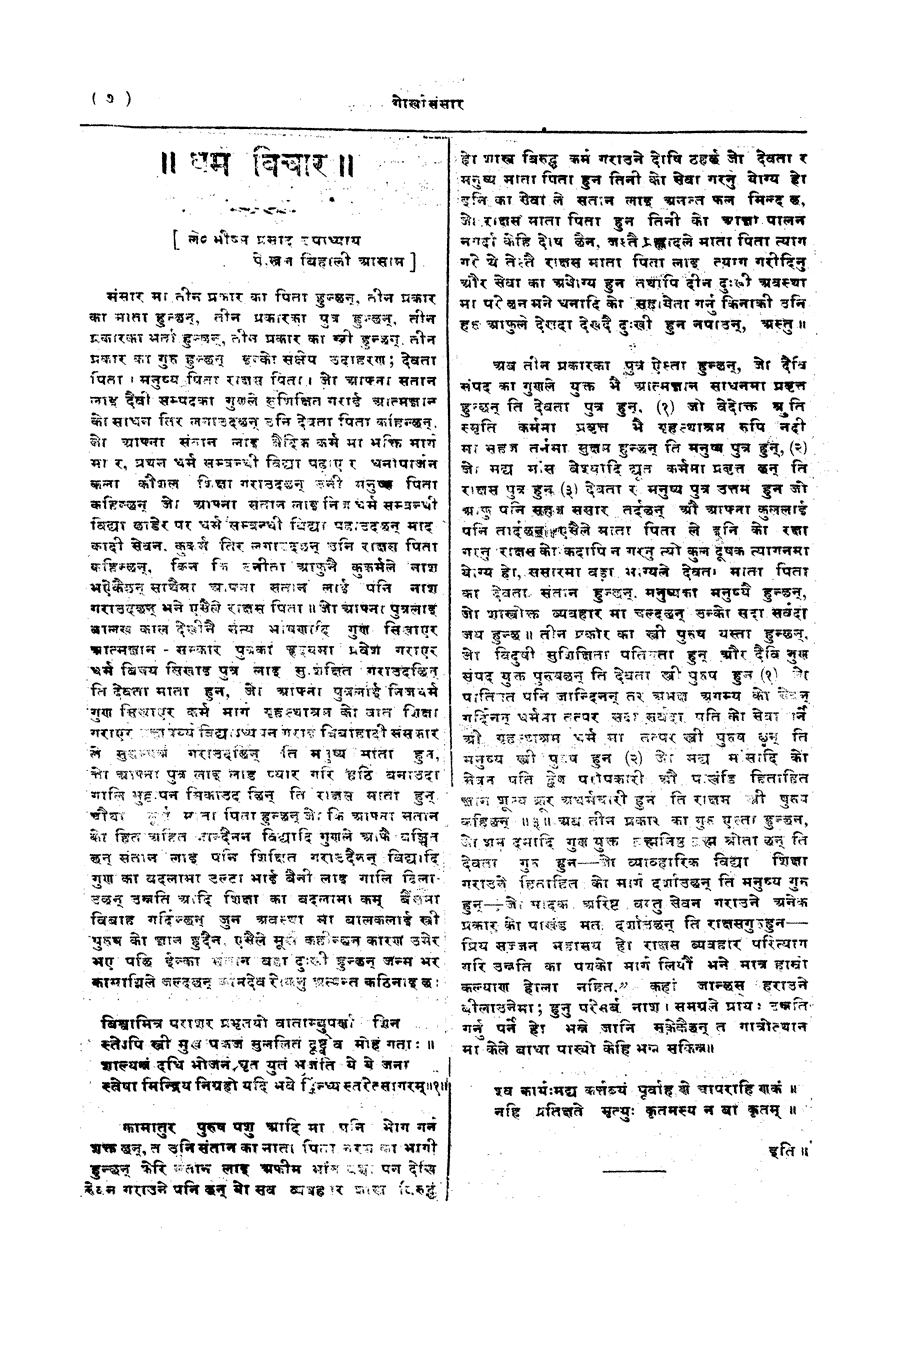 Gorkha Sansar, 6 April 1928, page 7